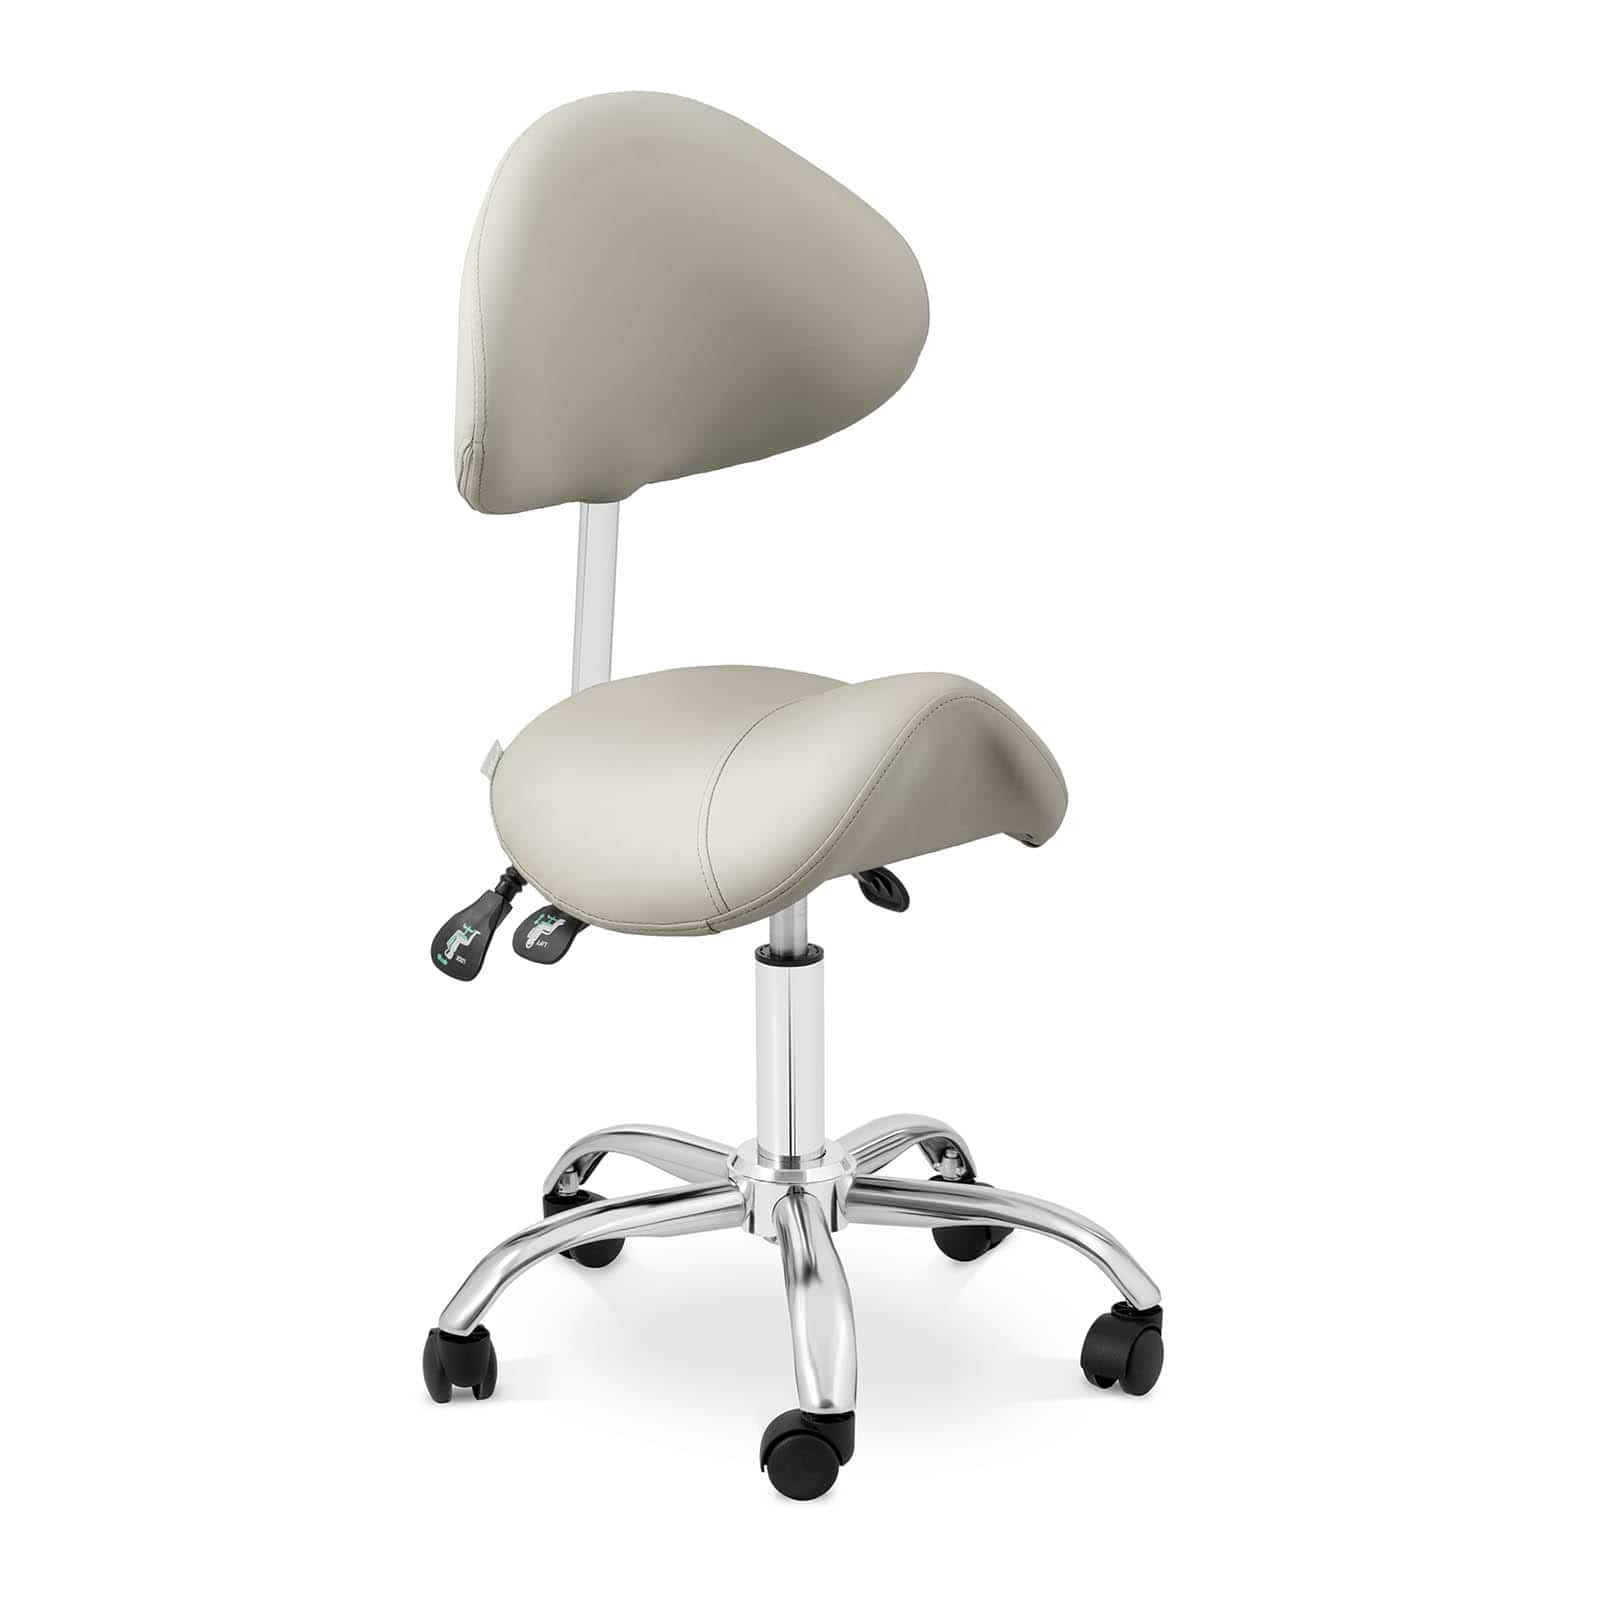 physa Zadel stoel - In hoogte verstelbare rugleuning en zitting - 55-69 cm - 150 kg - Grijs, Zilver